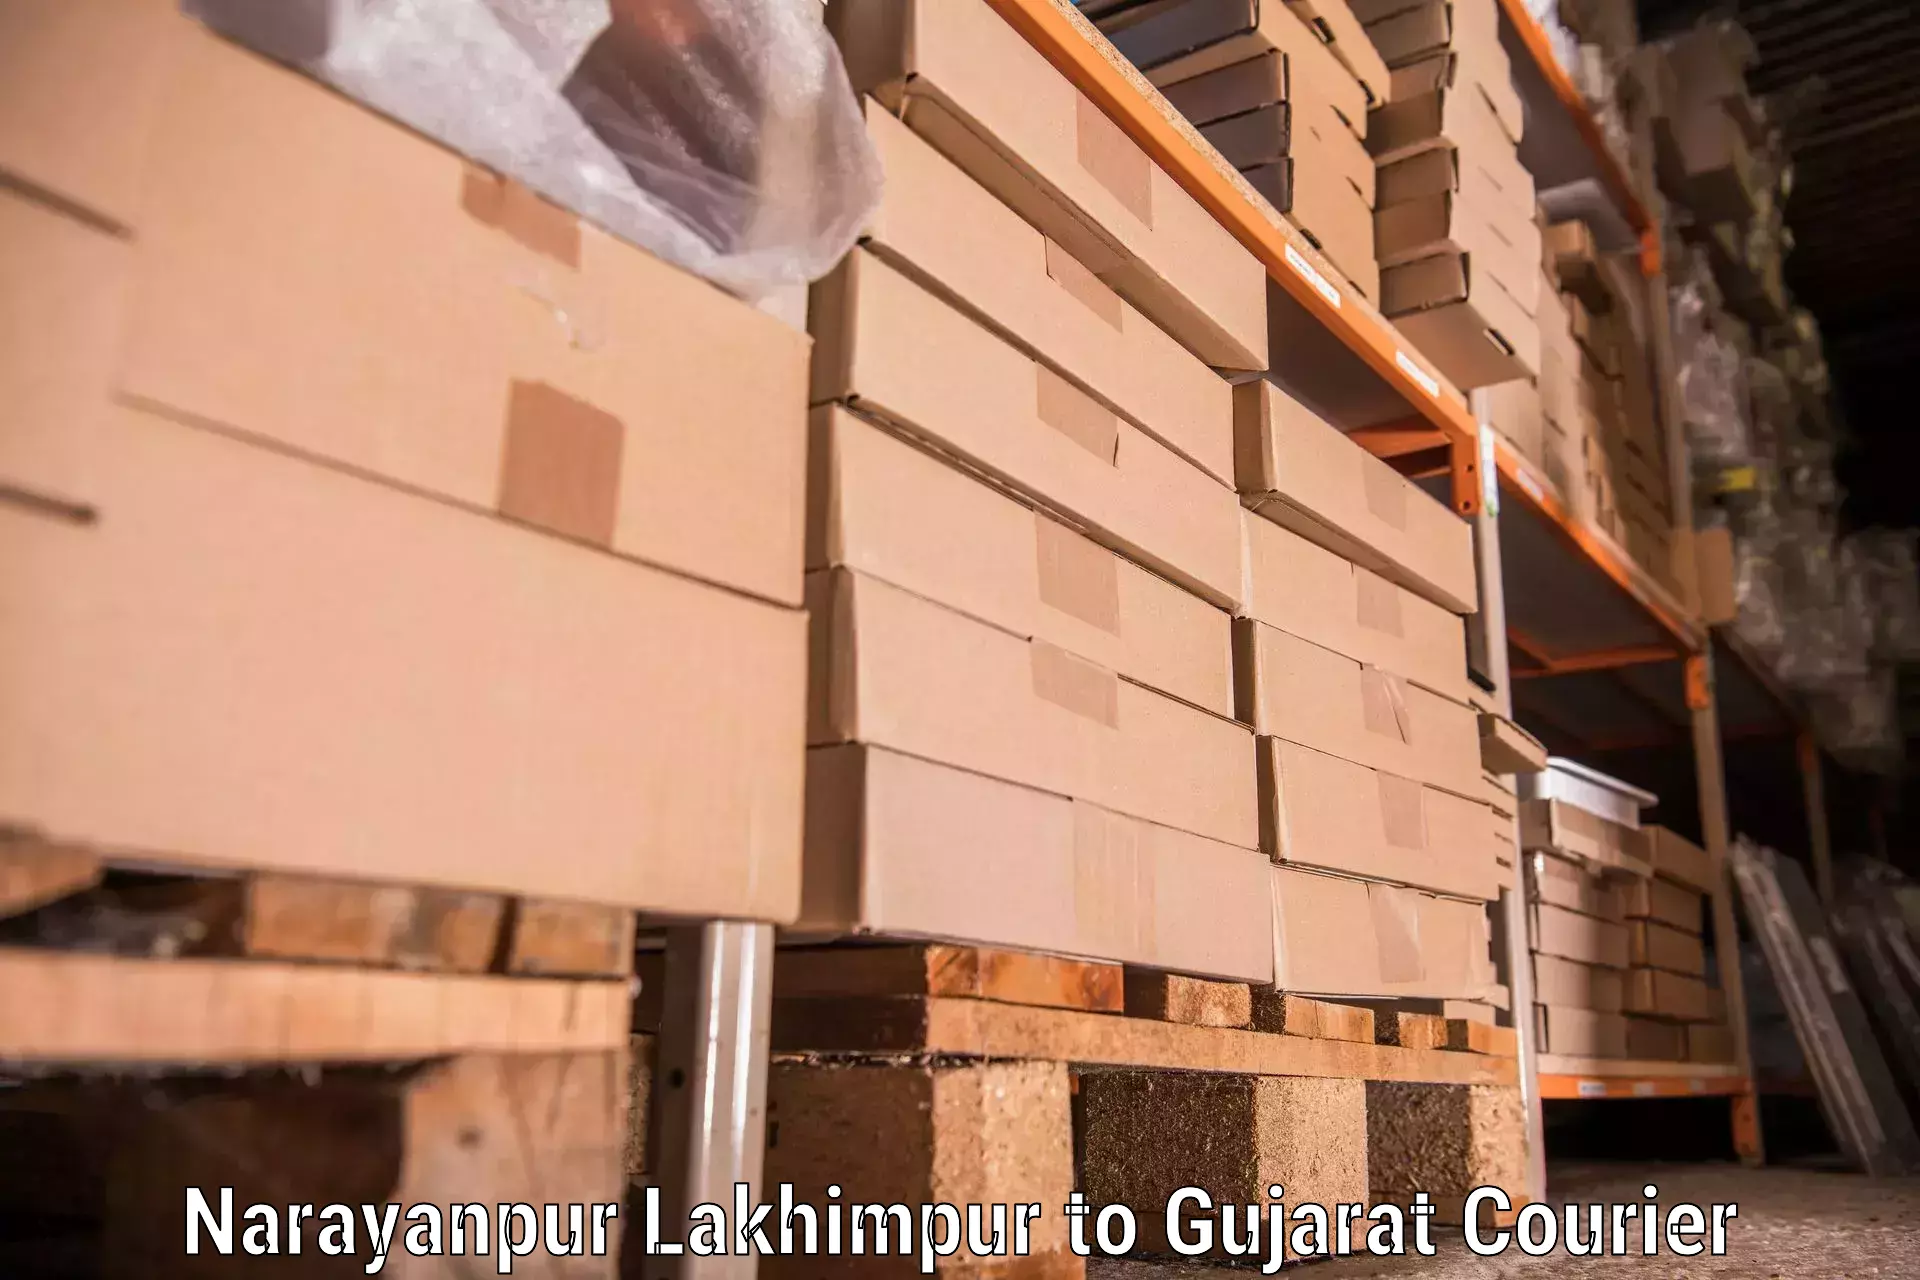 Efficient furniture movers Narayanpur Lakhimpur to Dholera